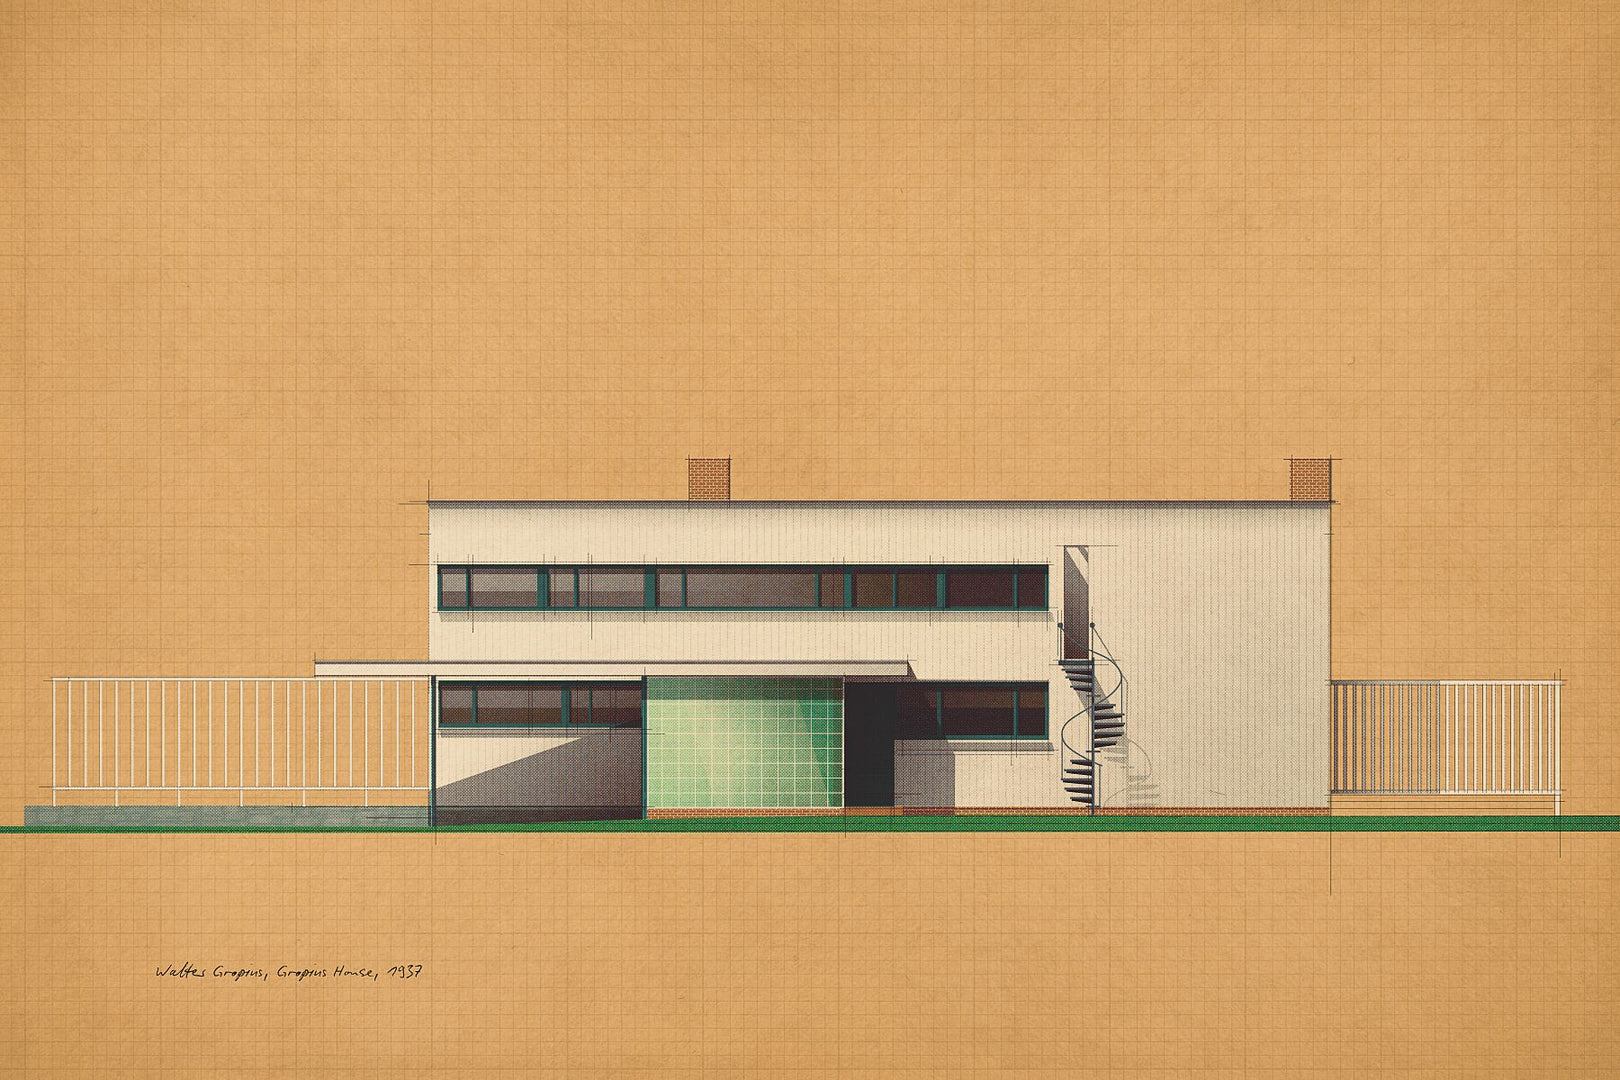 Walter Gropius, Gropius House, 1937